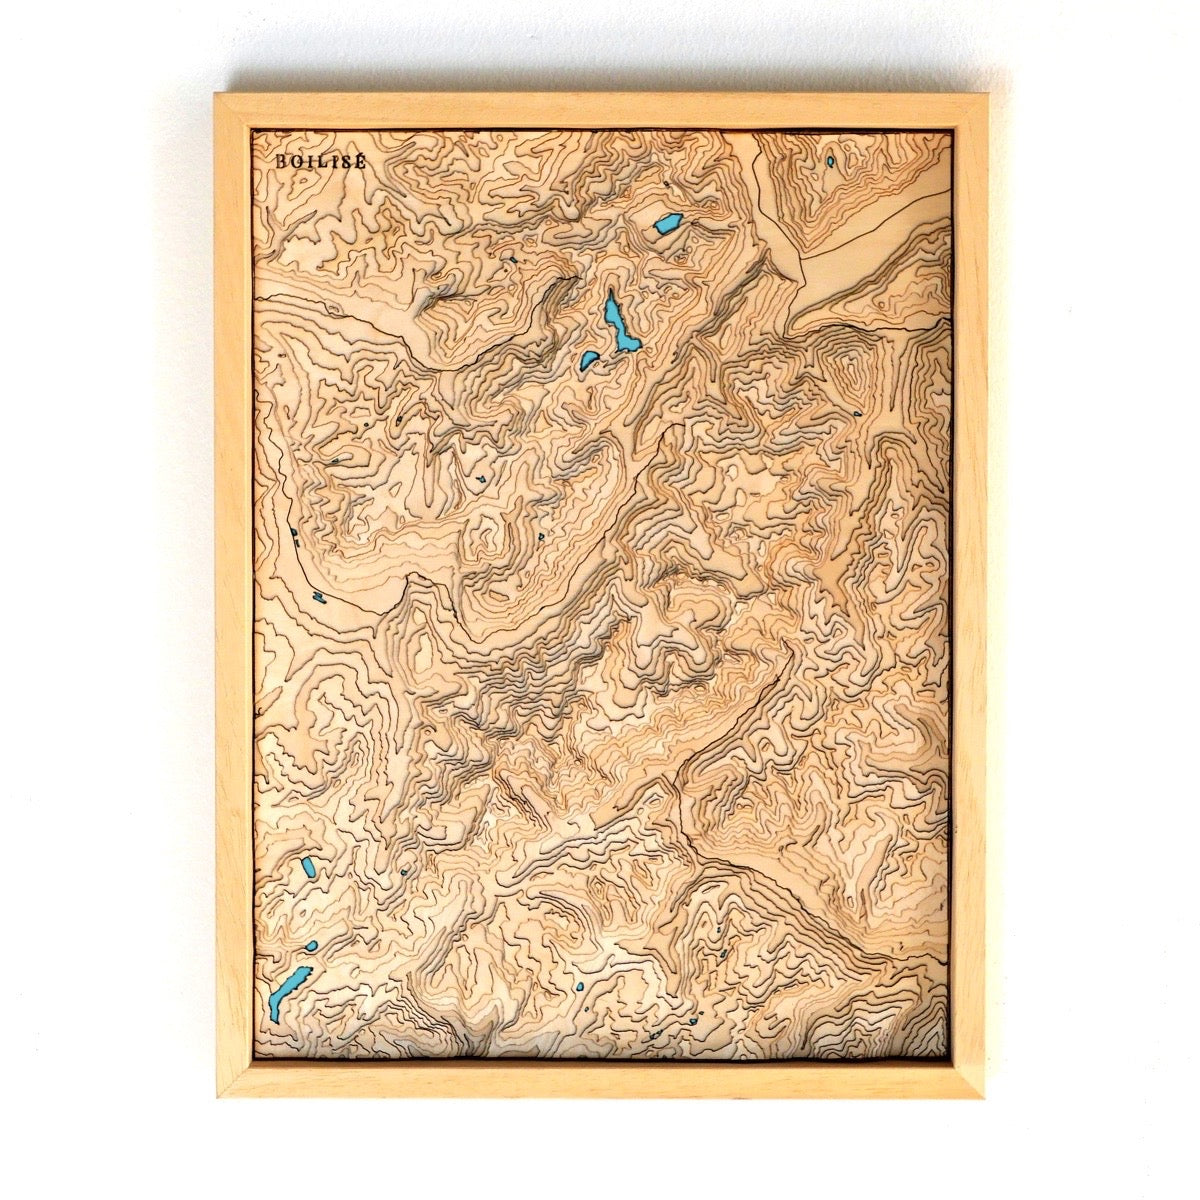 Carte topographique en relief du massif du mont blanc avec lacs turquoises dans une cadre standard brut